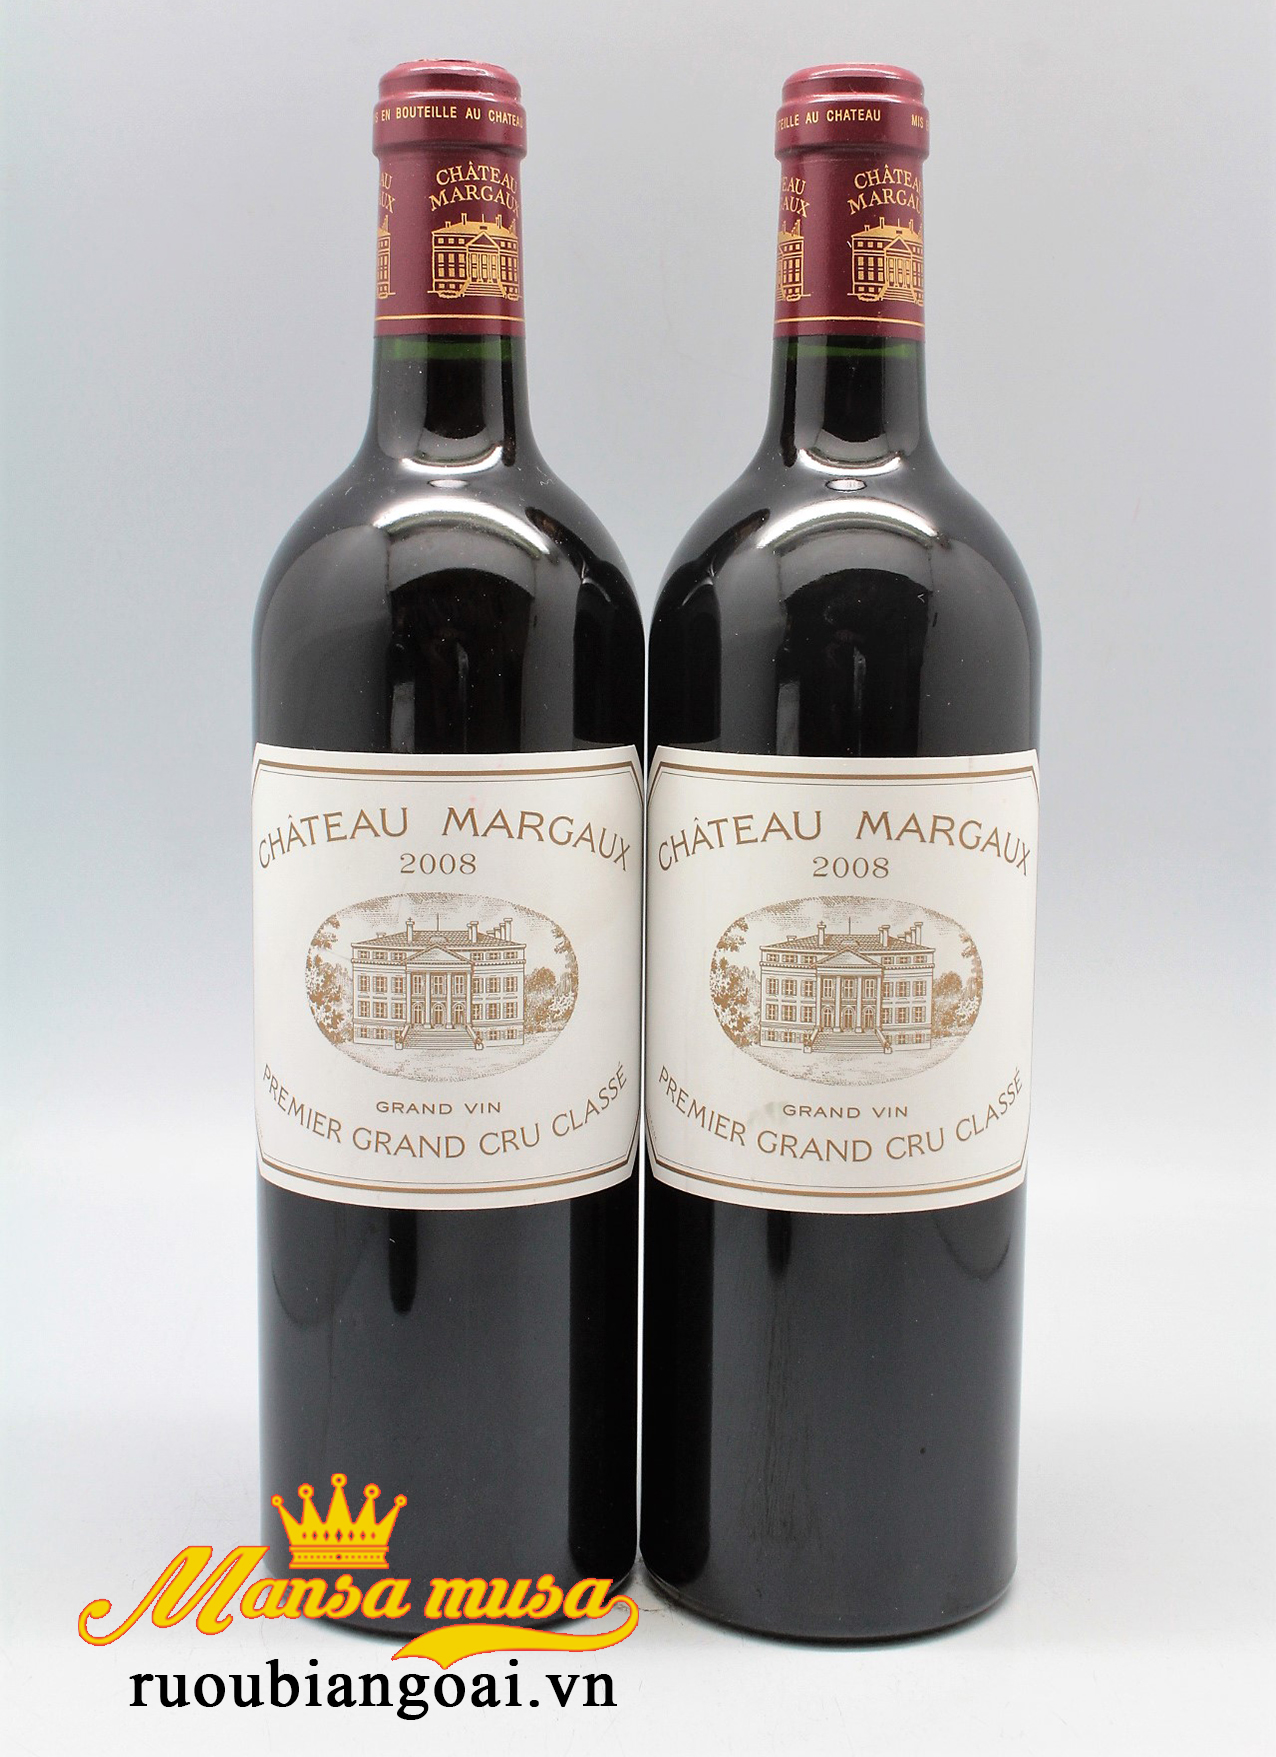 Thưởng thức rượu vang đỏ pháp Chateau Margaux 2008